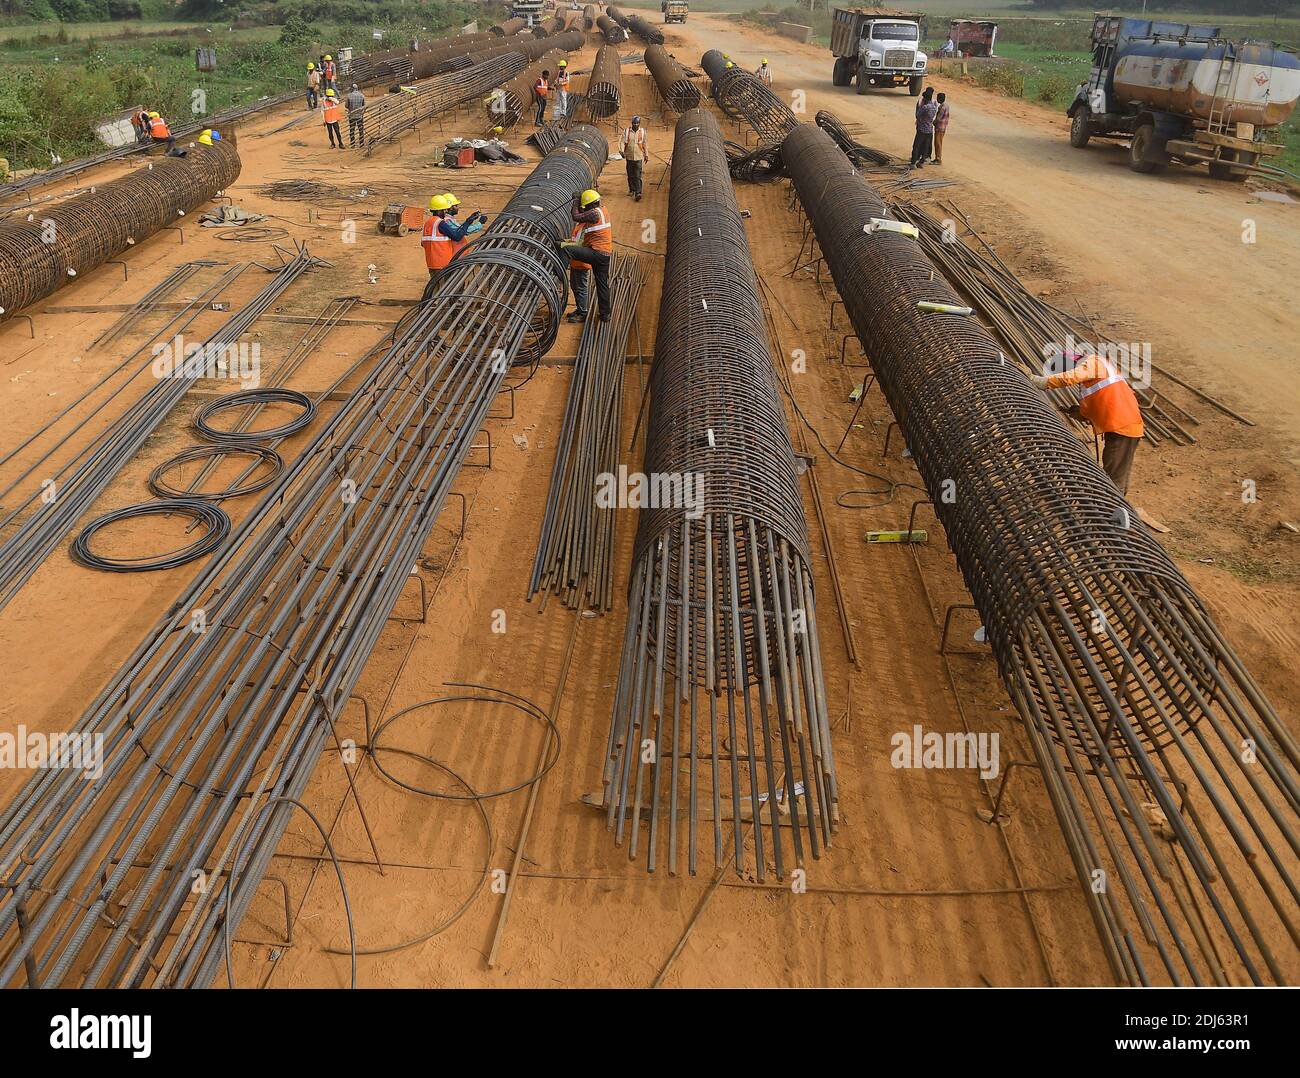 Verlegung von Gleisen und anderen damit verbundenen Bauarbeiten in vollem Gange in Nischintapur, in den Peripherien der Stadt Agartala gelegen. Ein weiteres großes Eisenbahnprojekt, das Indien und Bangladesch durch Tripura verbindet, steht an der Schwelle zur Fertigstellung. Agartala, Tripura, Indien. Stockfoto